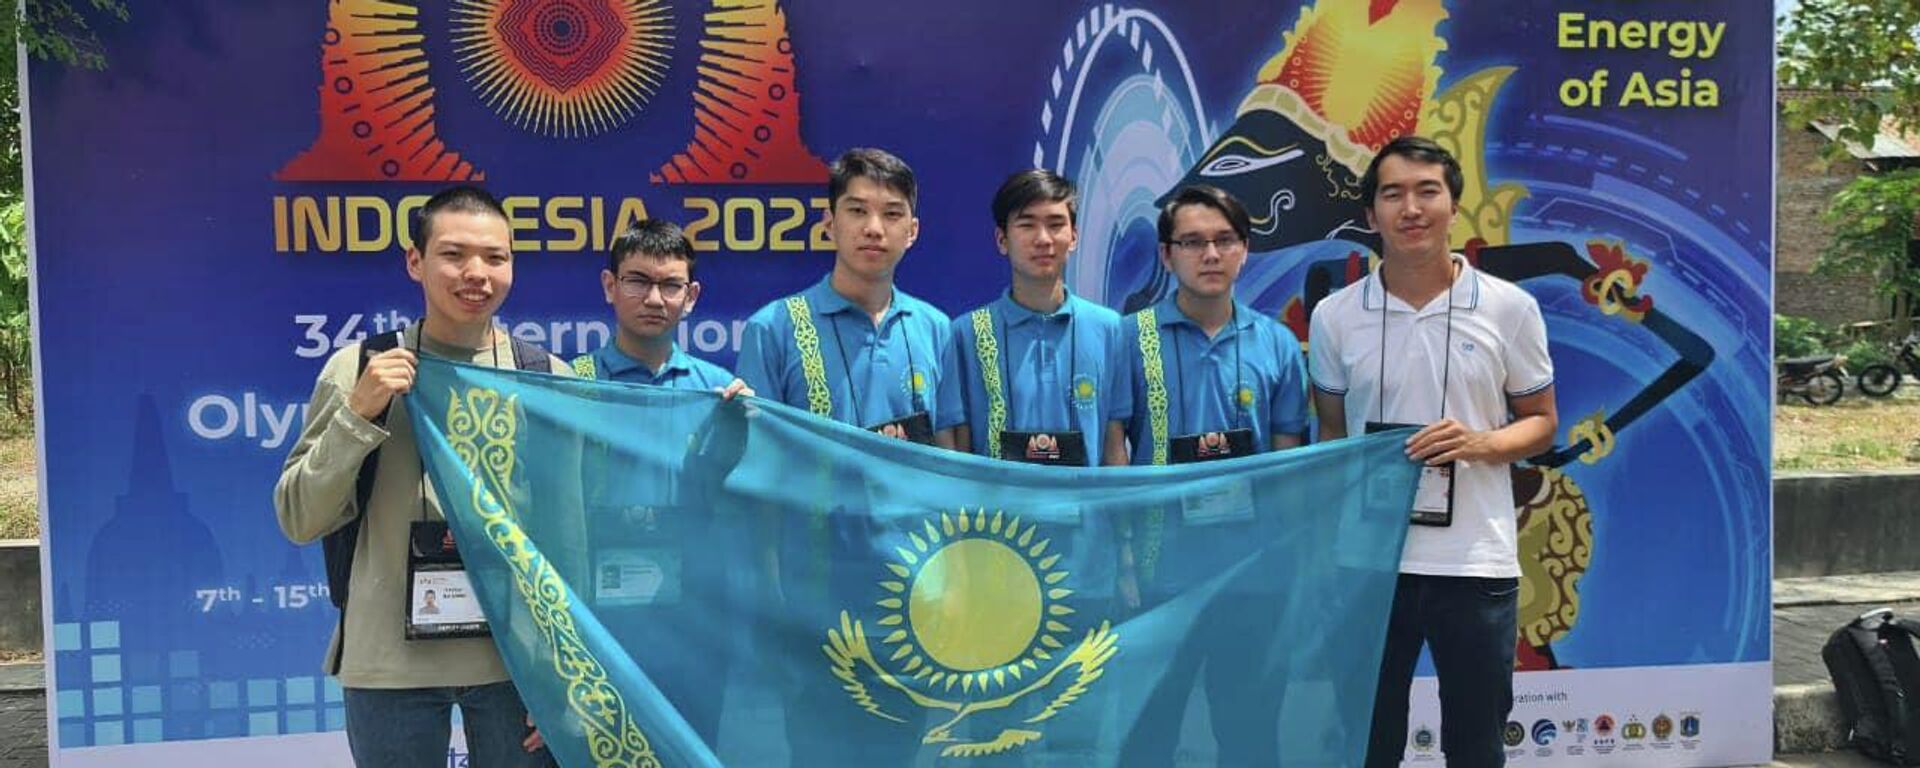 Четыре медали завоевали школьники на олимпиаде по информатике в Индонезии - Sputnik Казахстан, 1920, 15.08.2022